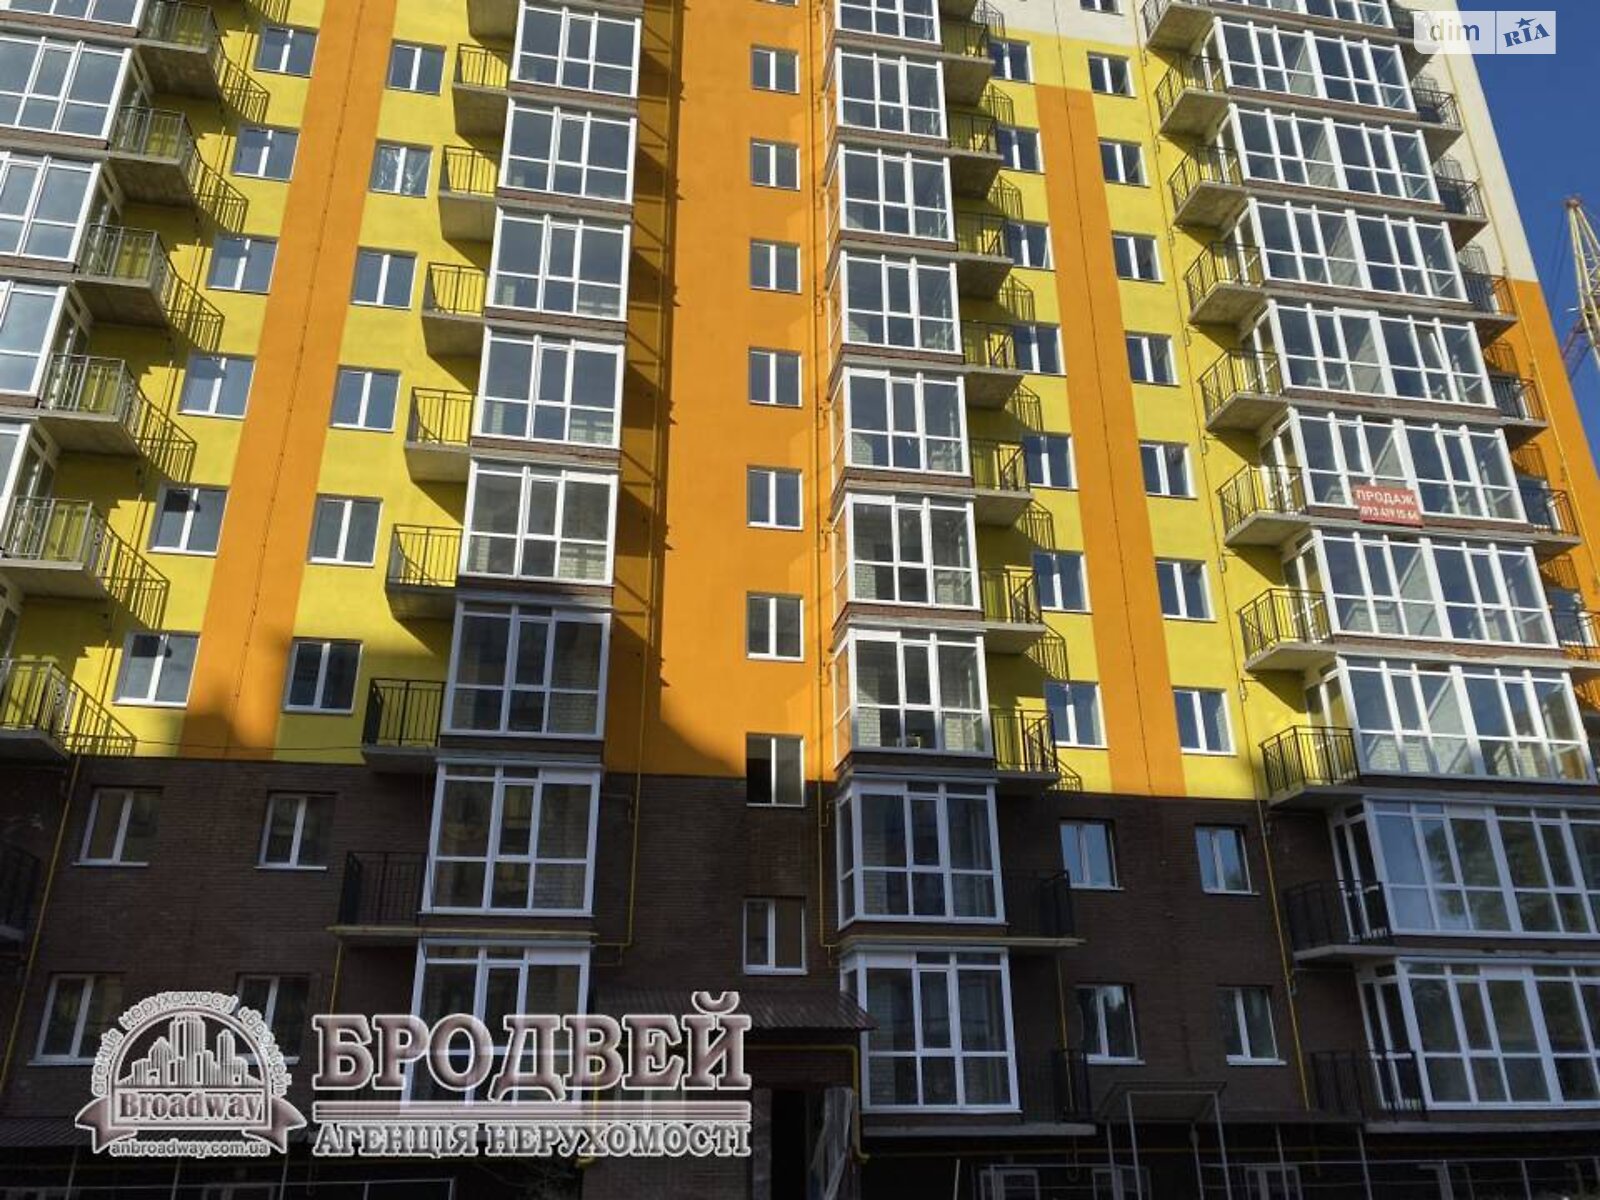 Продажа однокомнатной квартиры в Чернигове, на ул. Любецкая 106, район Масаны фото 1